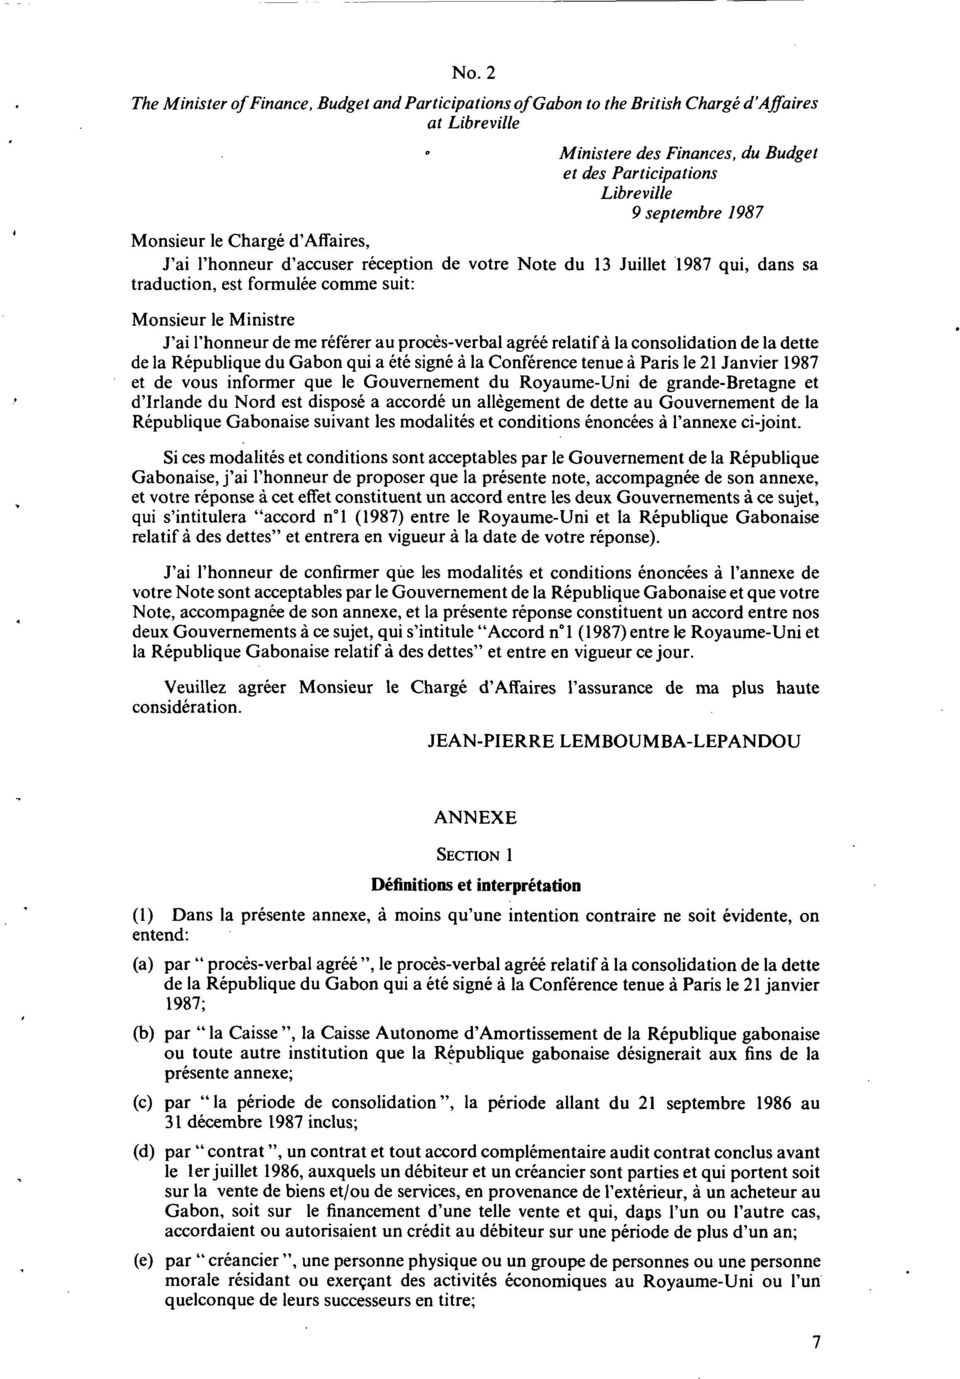 au proces-verbal agree relatif a la consolidation de la dette de la Republique du Gabon qui a ete signe a la Conference tenue a Paris le 21 Janvier 1987 et de vous informer que le Gouvernement du